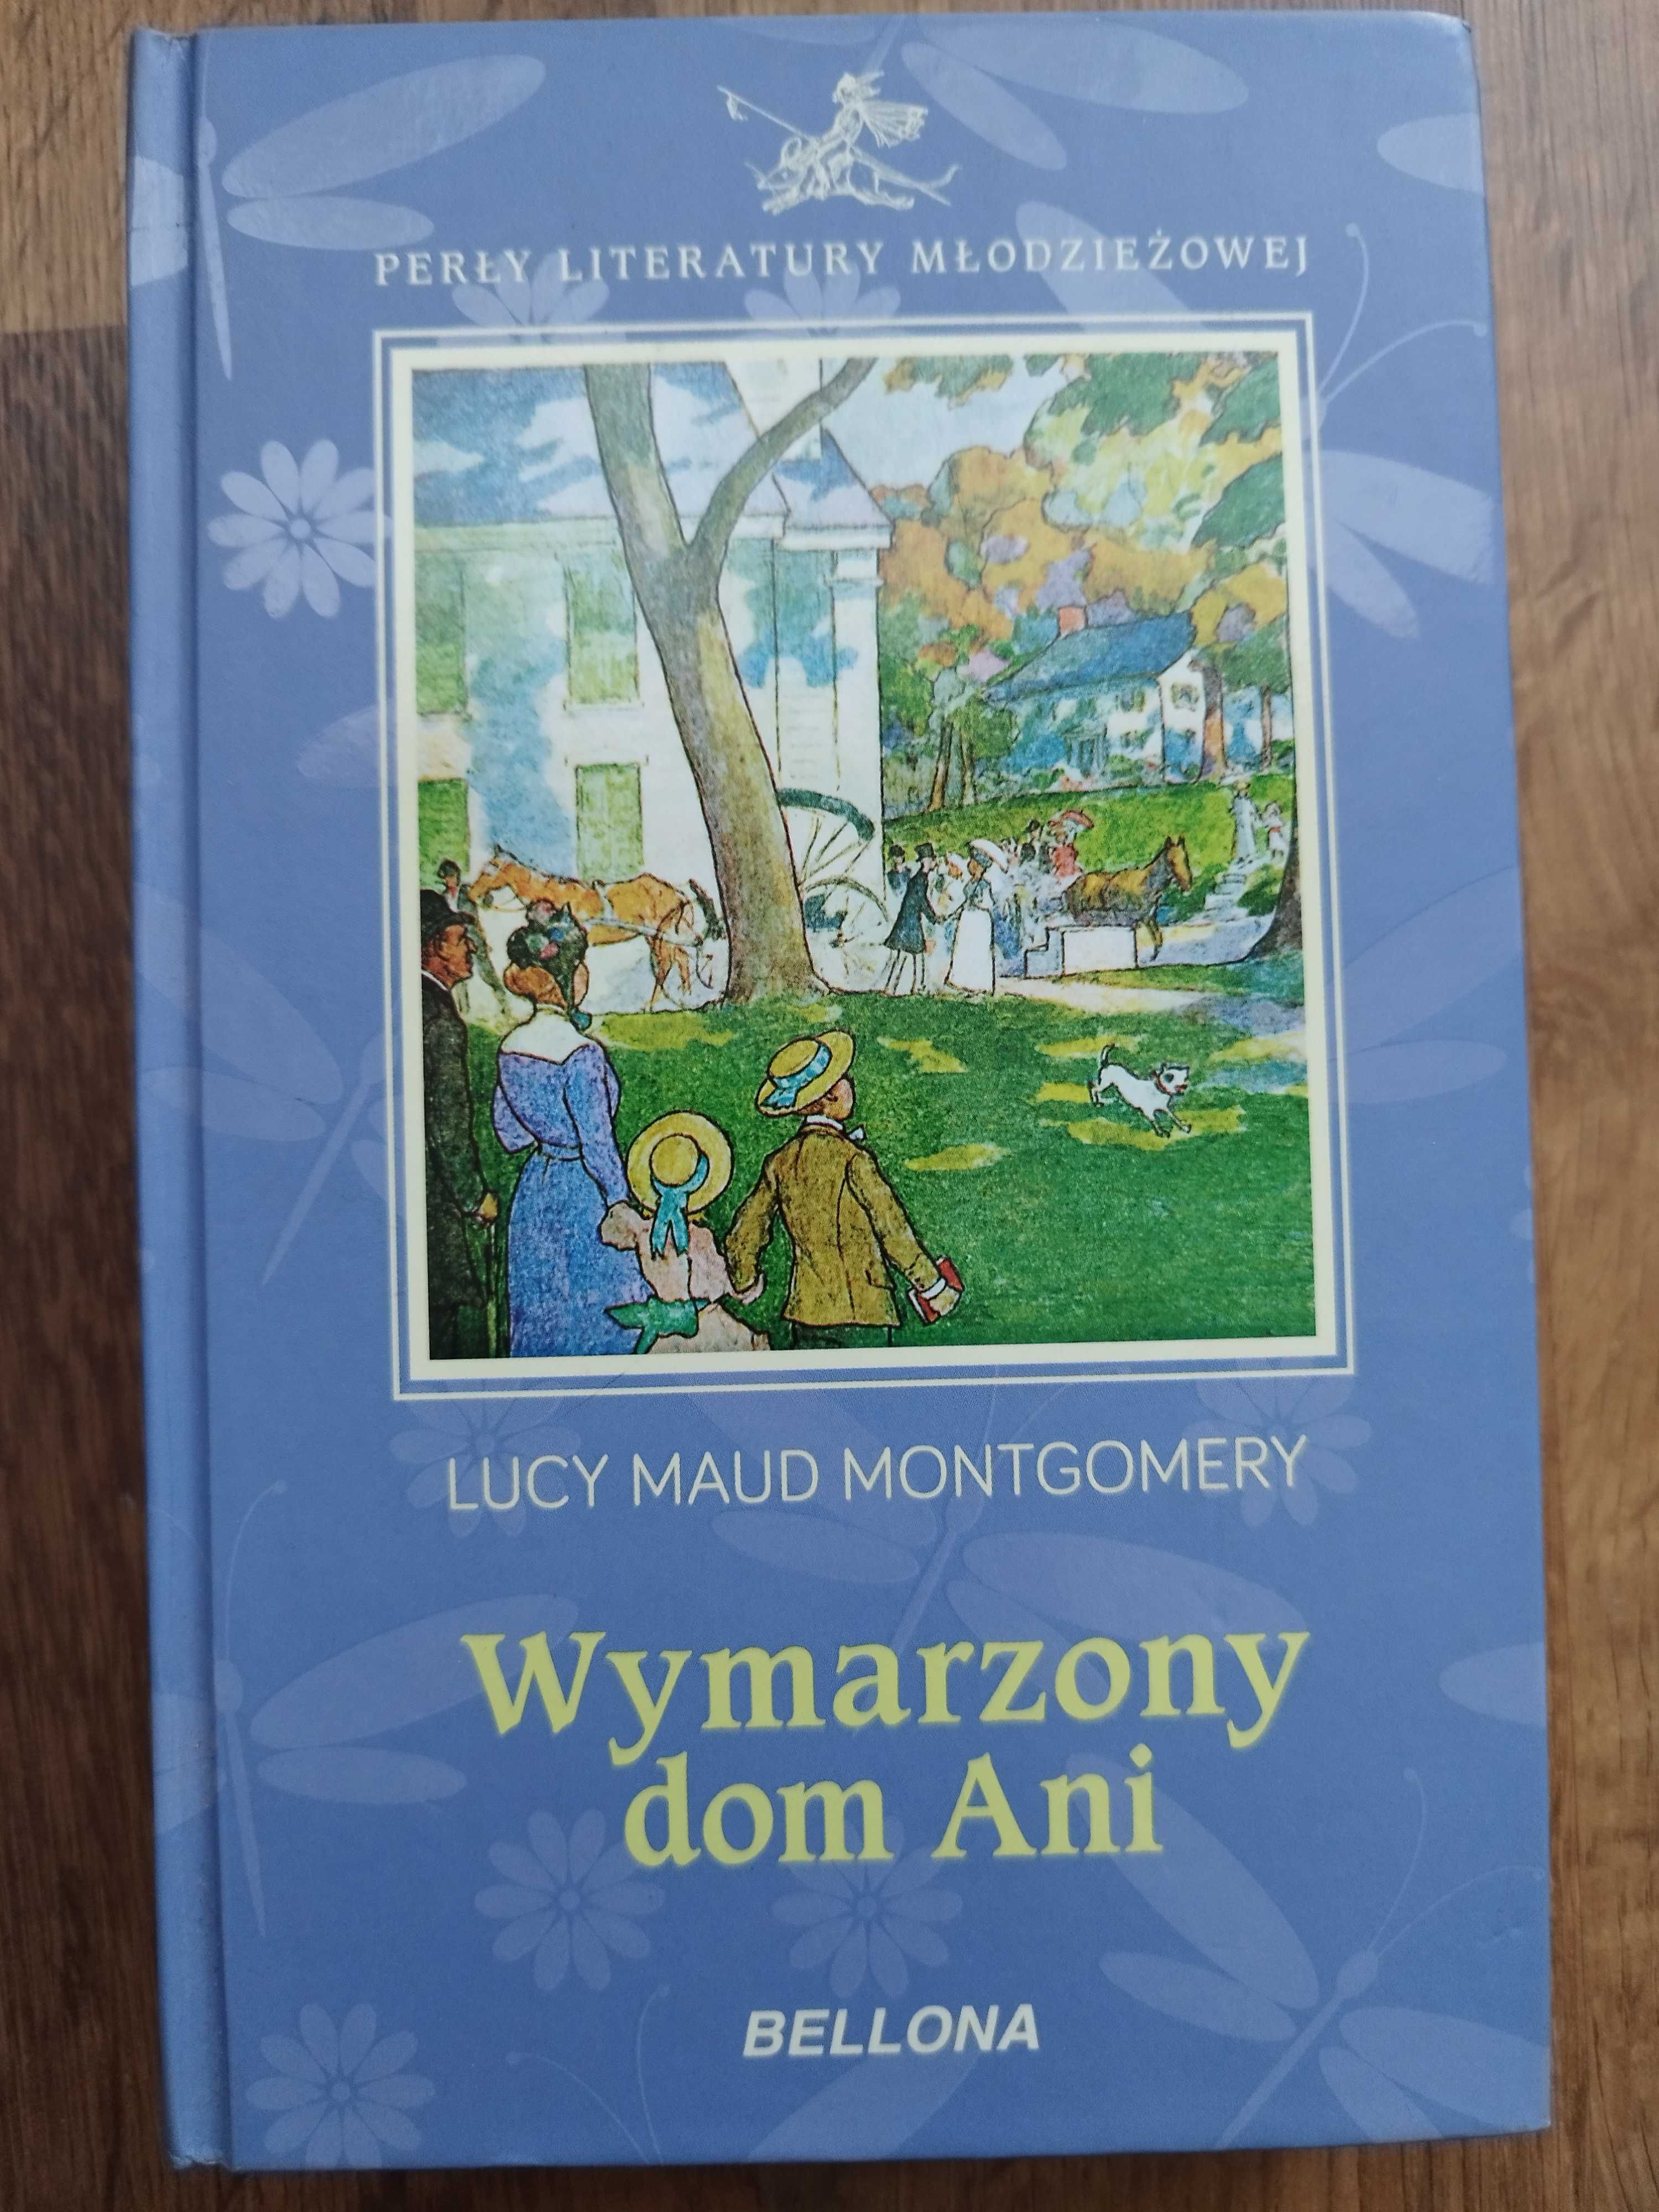 Енн у домі мрії, книги польською Wymarzony dom Ani